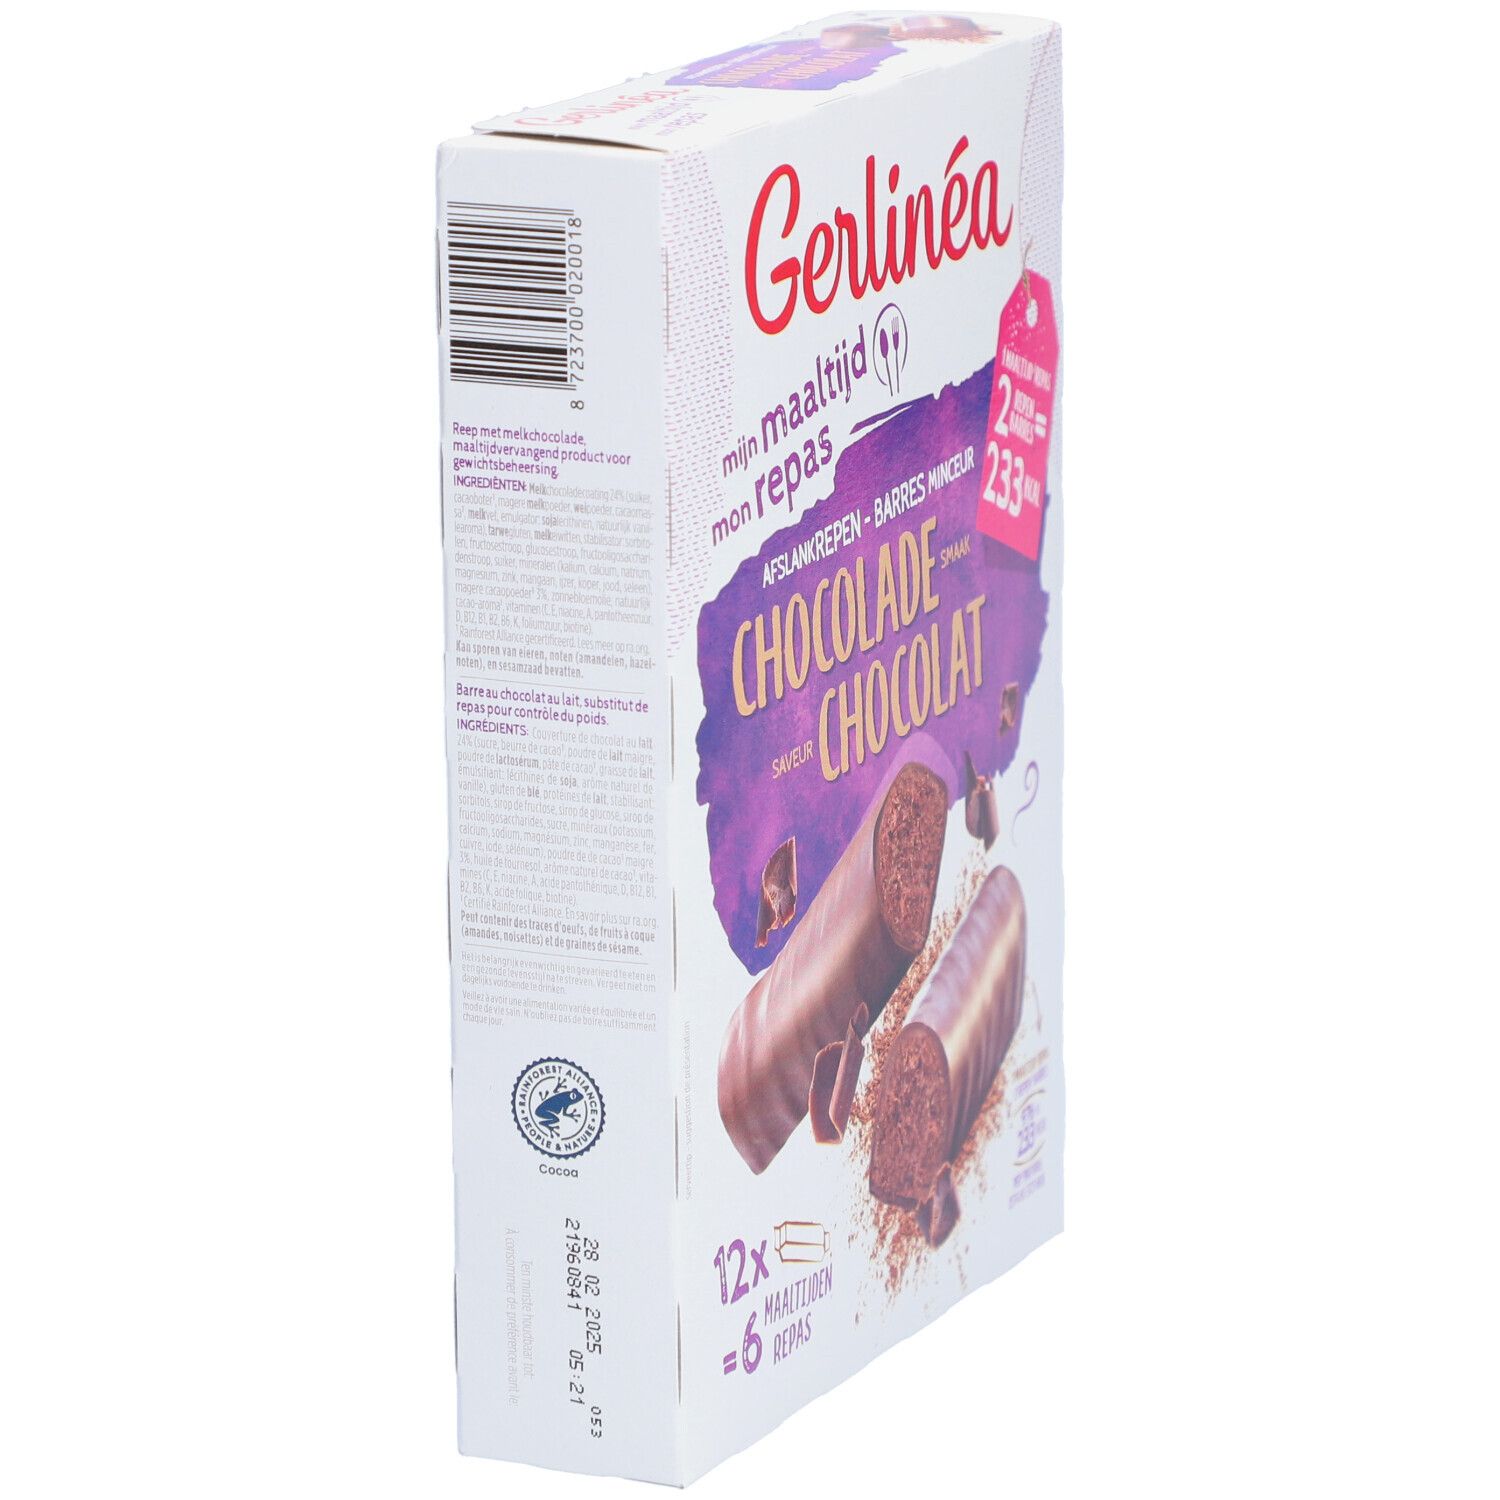 Gerlinéa Mon Repas Barres Chocolat